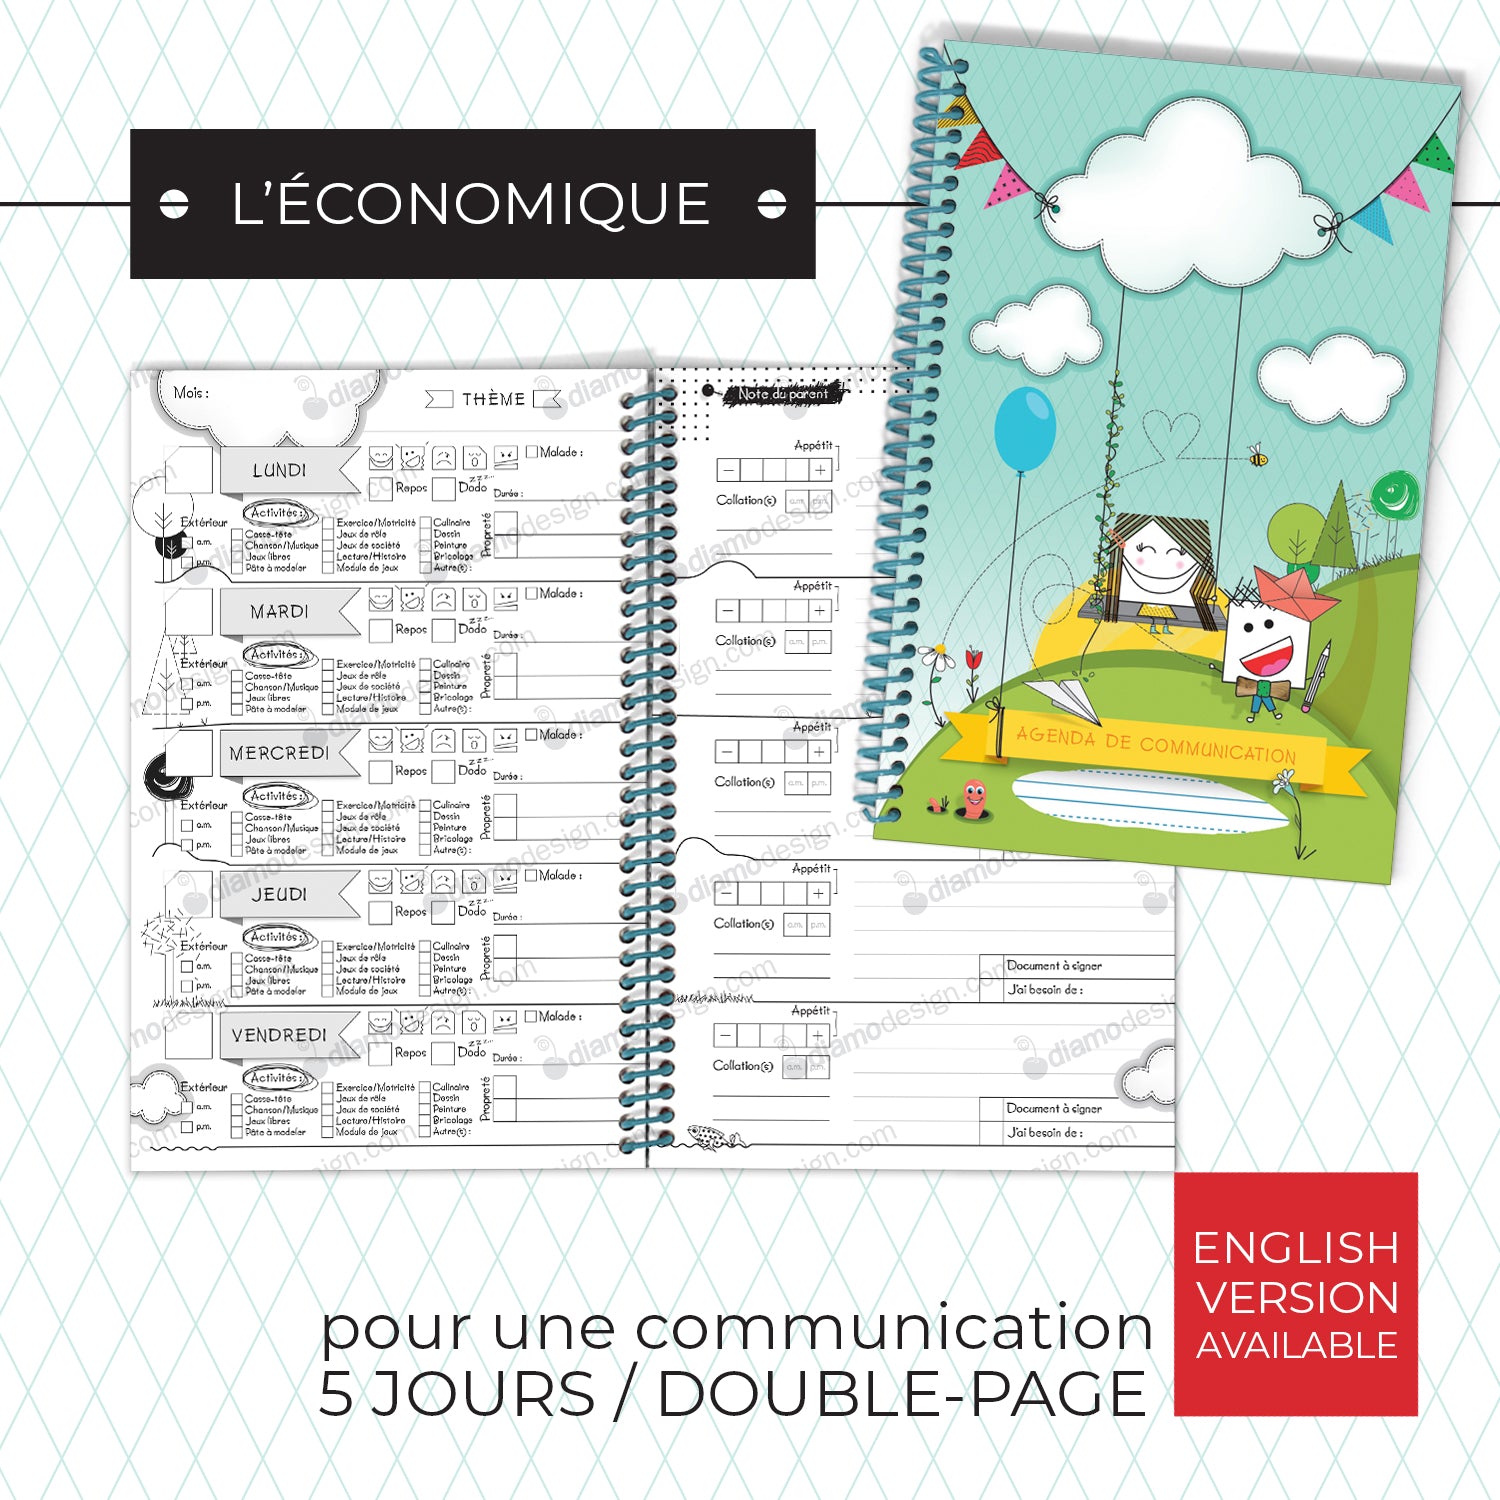 Couverture et semaine de l'agenda de communication de Diamodesign | Daycare Communication Diary also available.